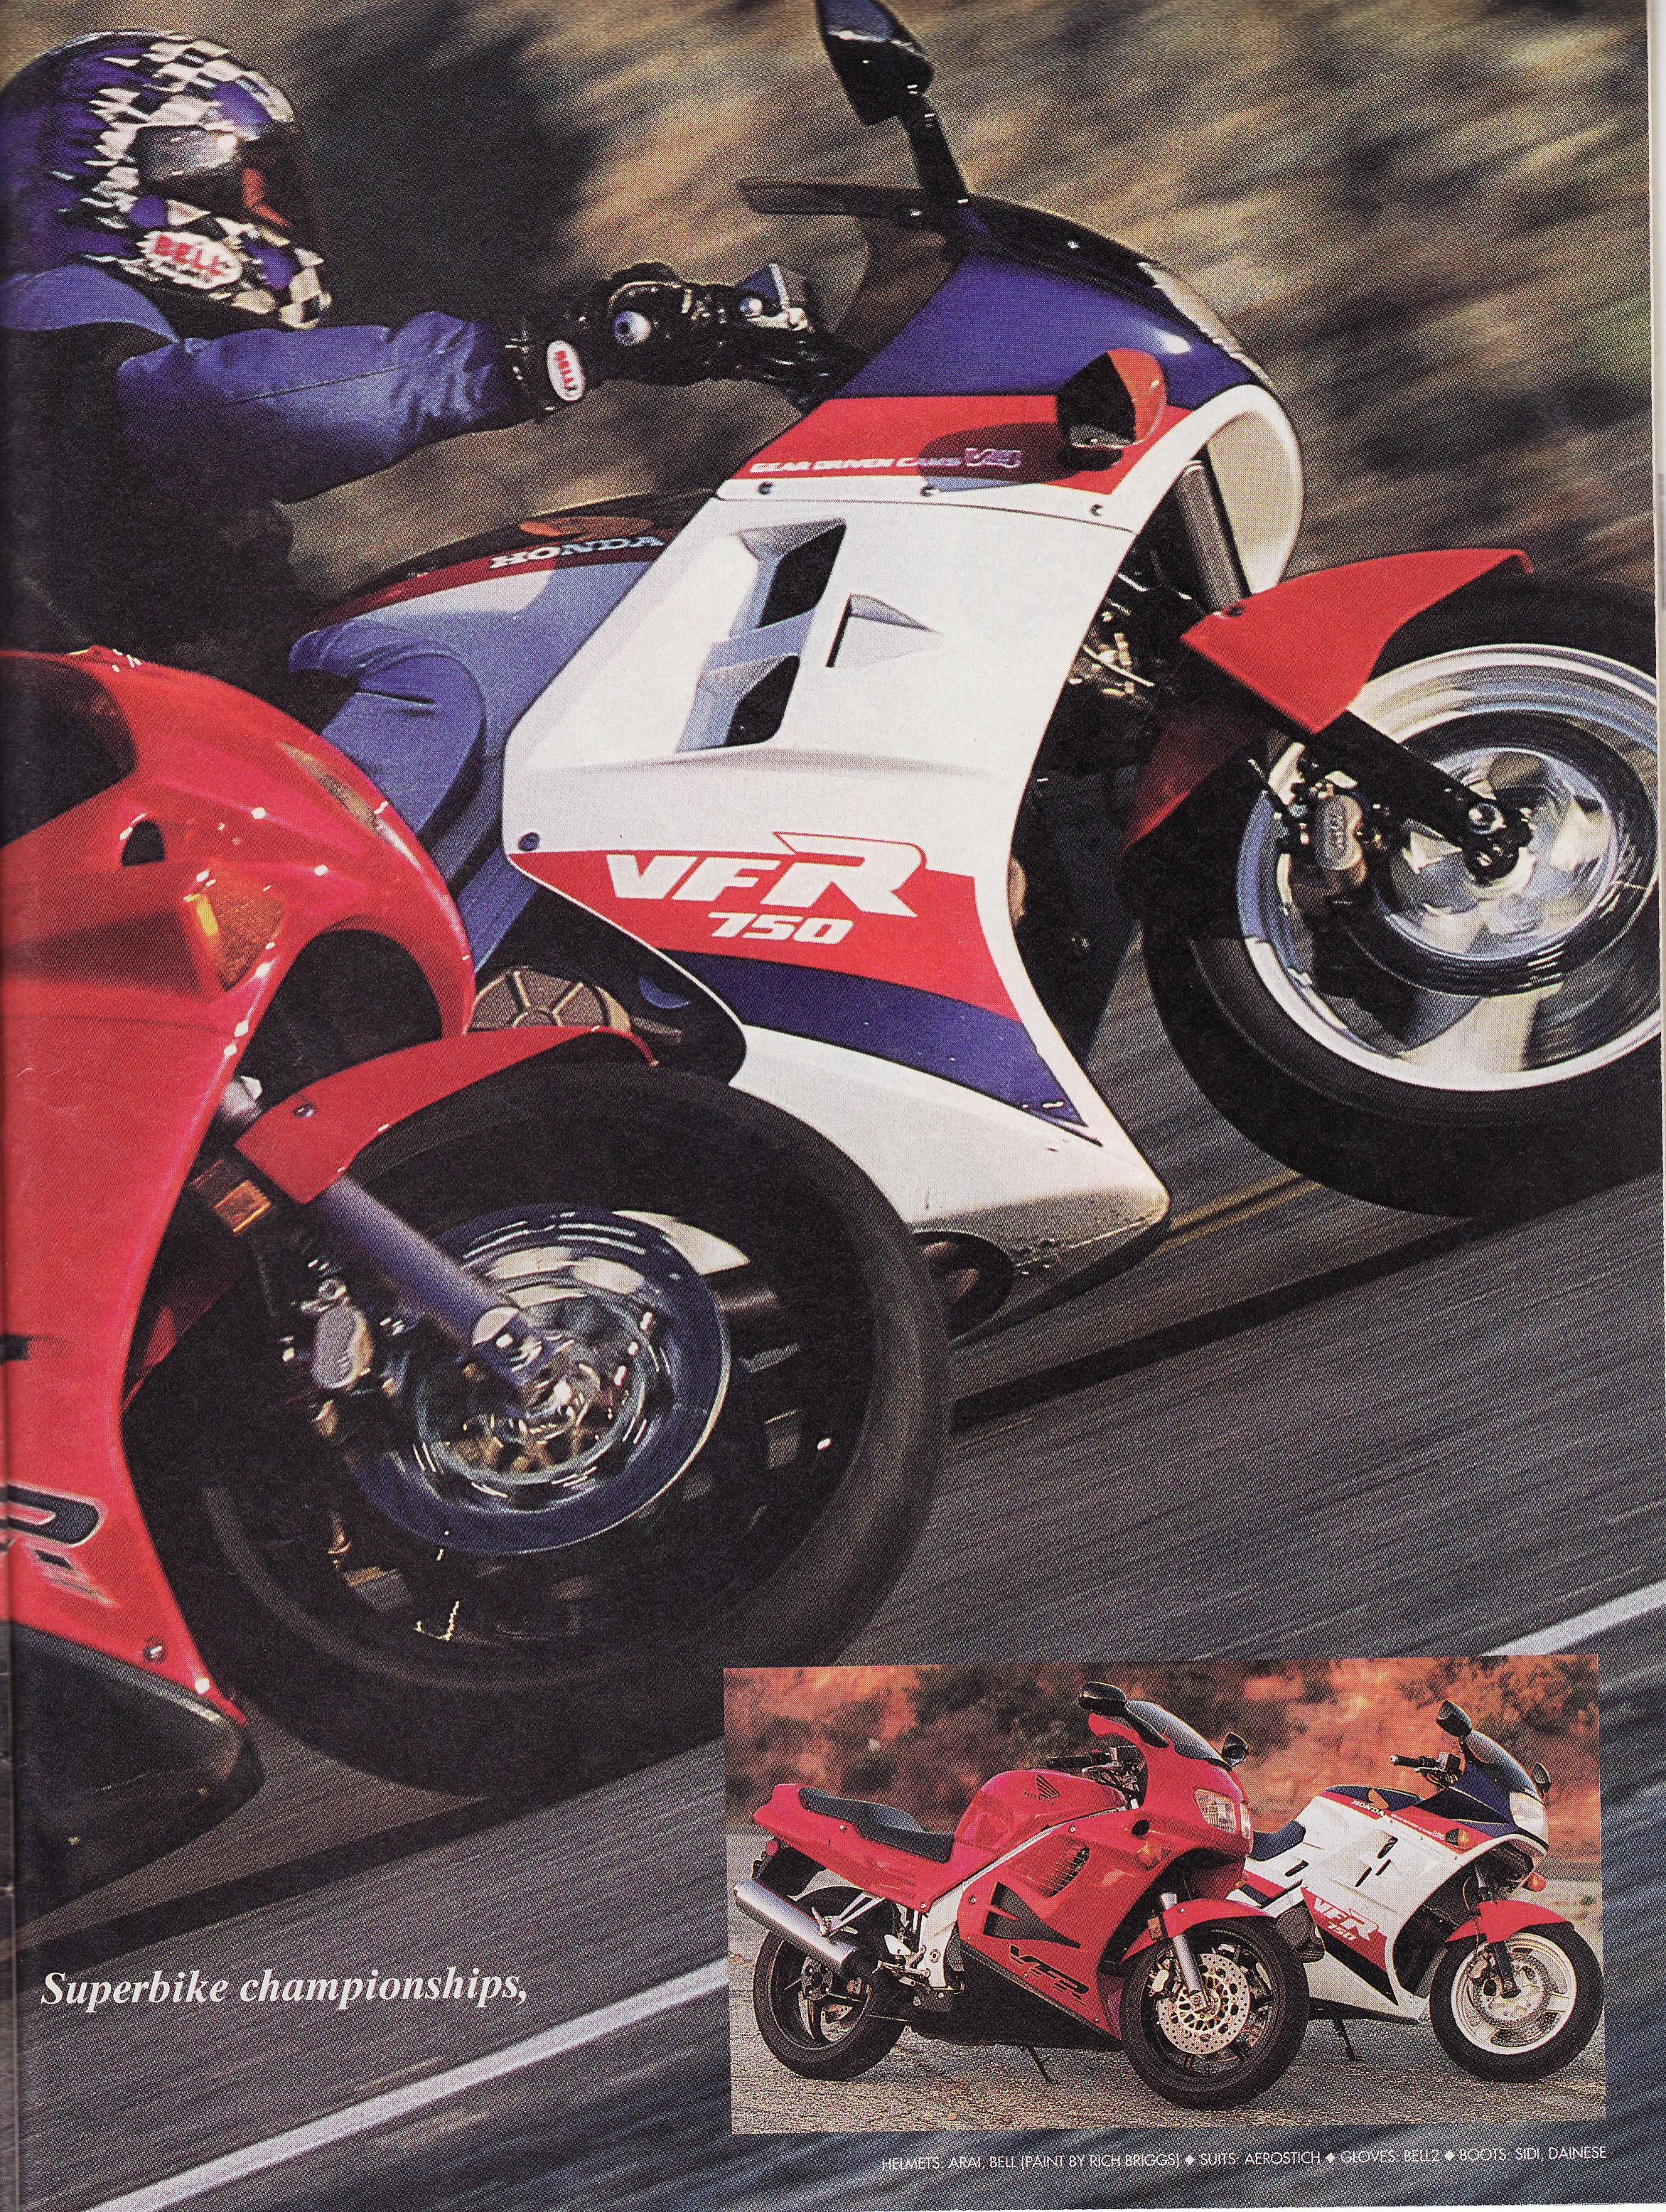 More information about "Sport Rider 1986 VFR  vs 1996 VFR comparison"